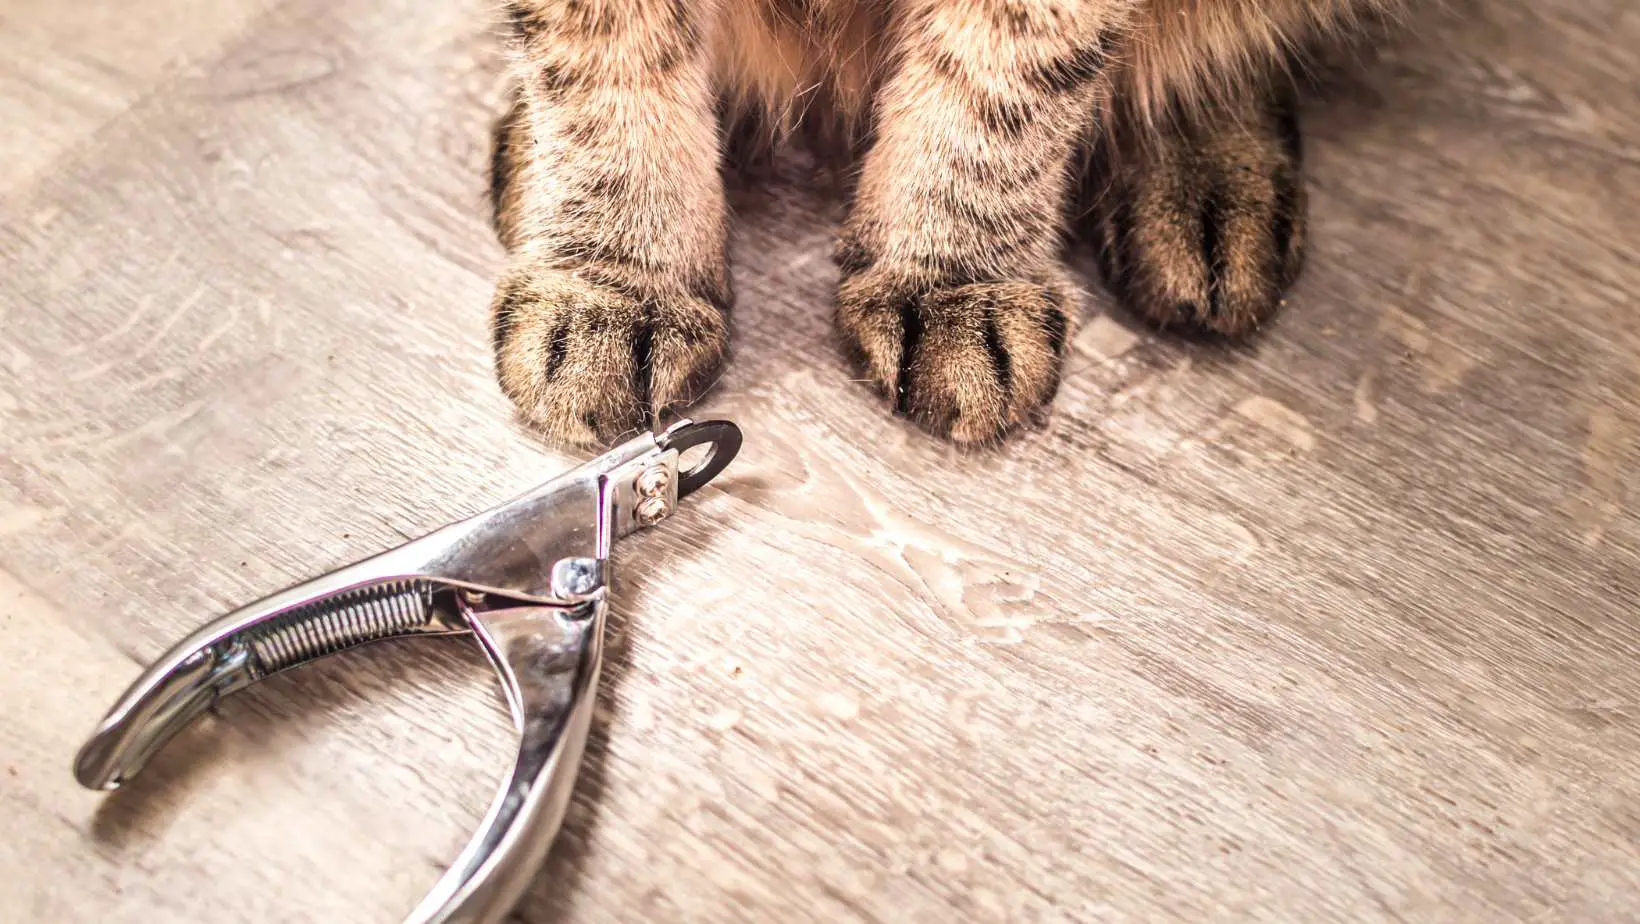 How Often Should I Trim My Cats Nails?